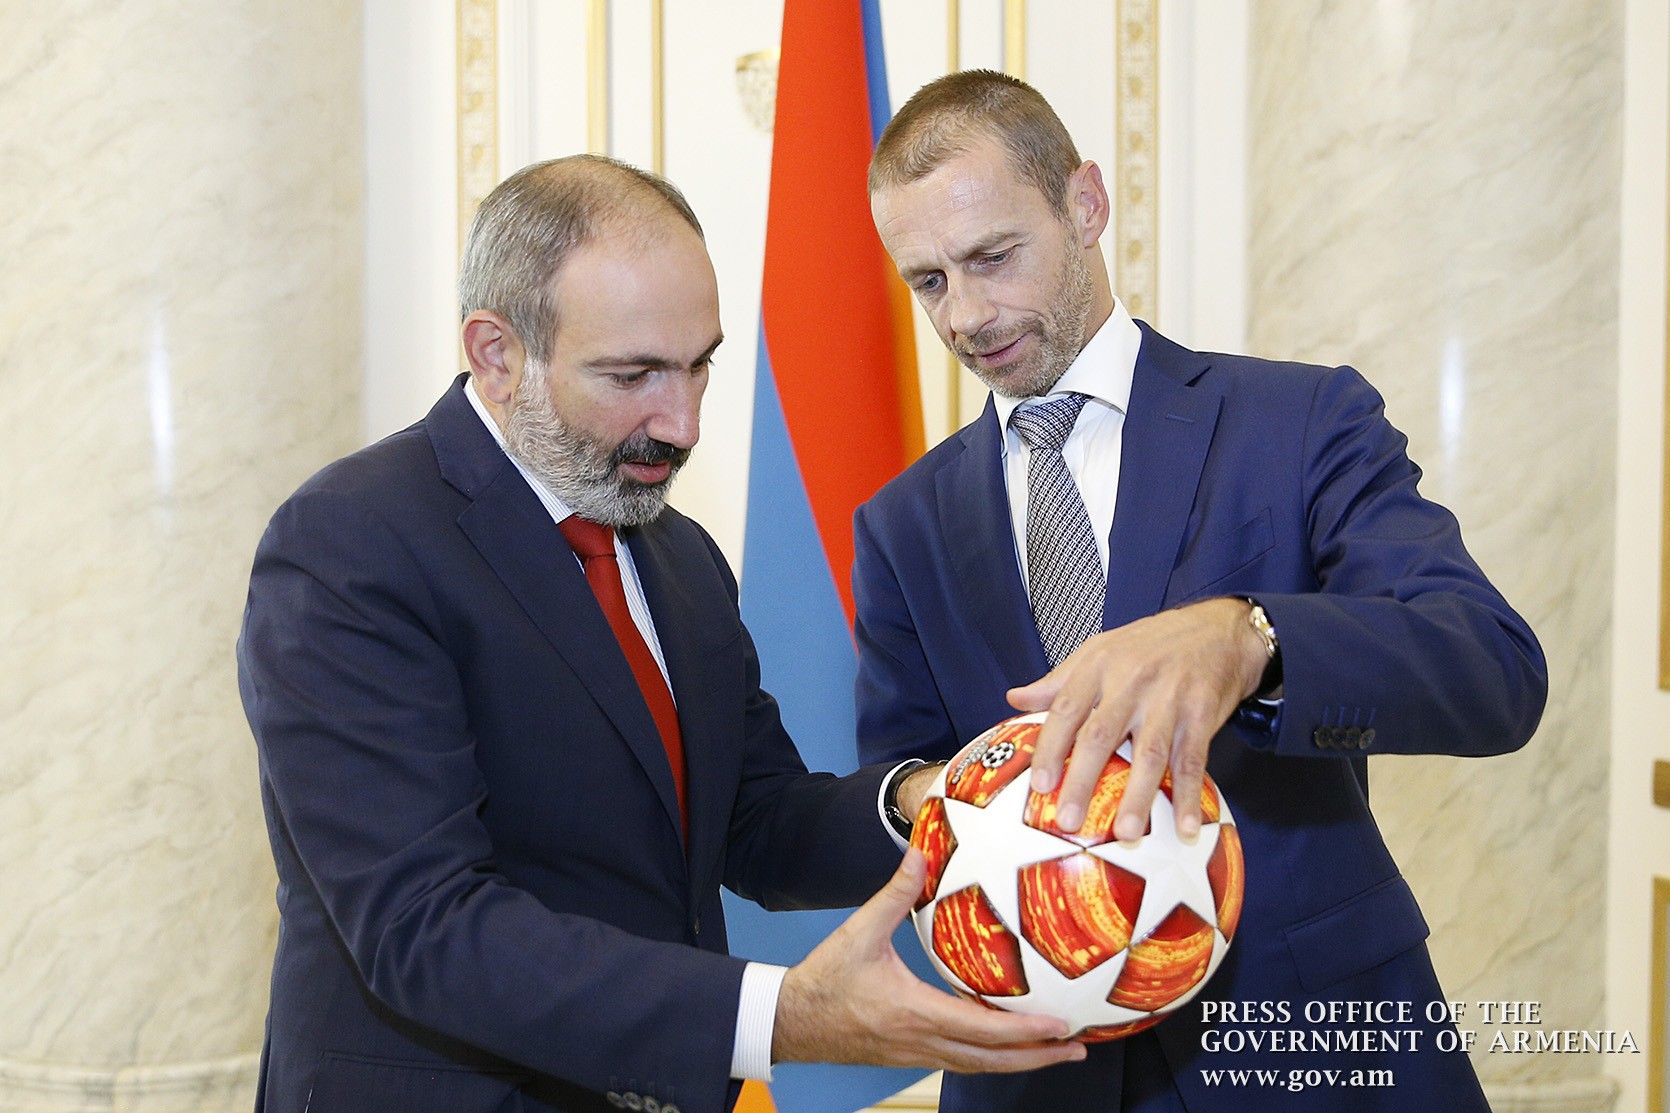 УЕФА будет и впредь способствовать развитию футбола в Армении - Александр Чеферин